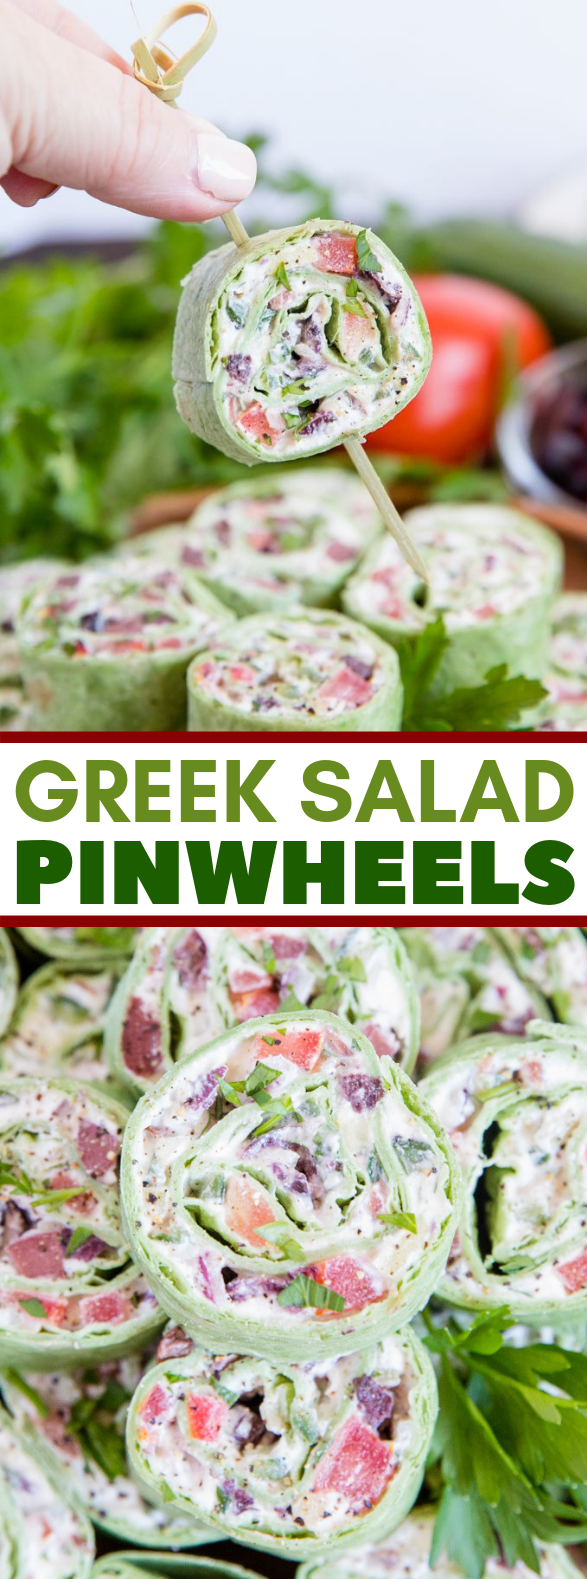 GREEK SALAD PINWHEELS #vegetarian #appetizers